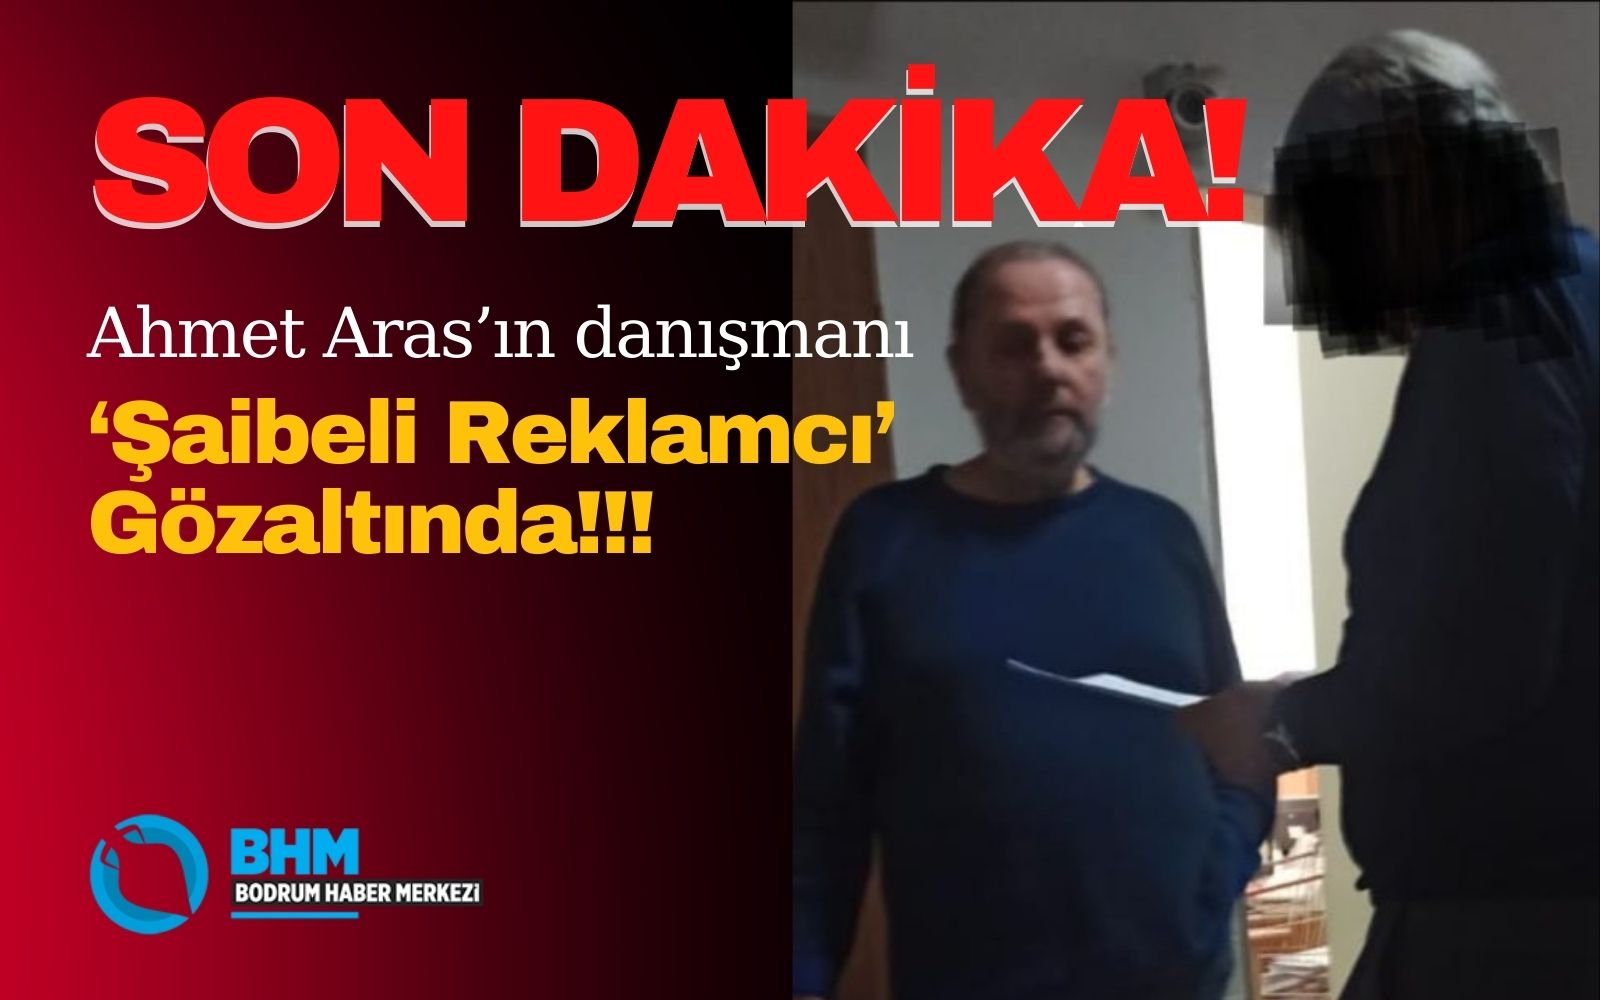 SON DAKİKA! Ahmet Aras’ın danışmanı ‘Şaibeli Reklamcı’ Gözaltında!!!